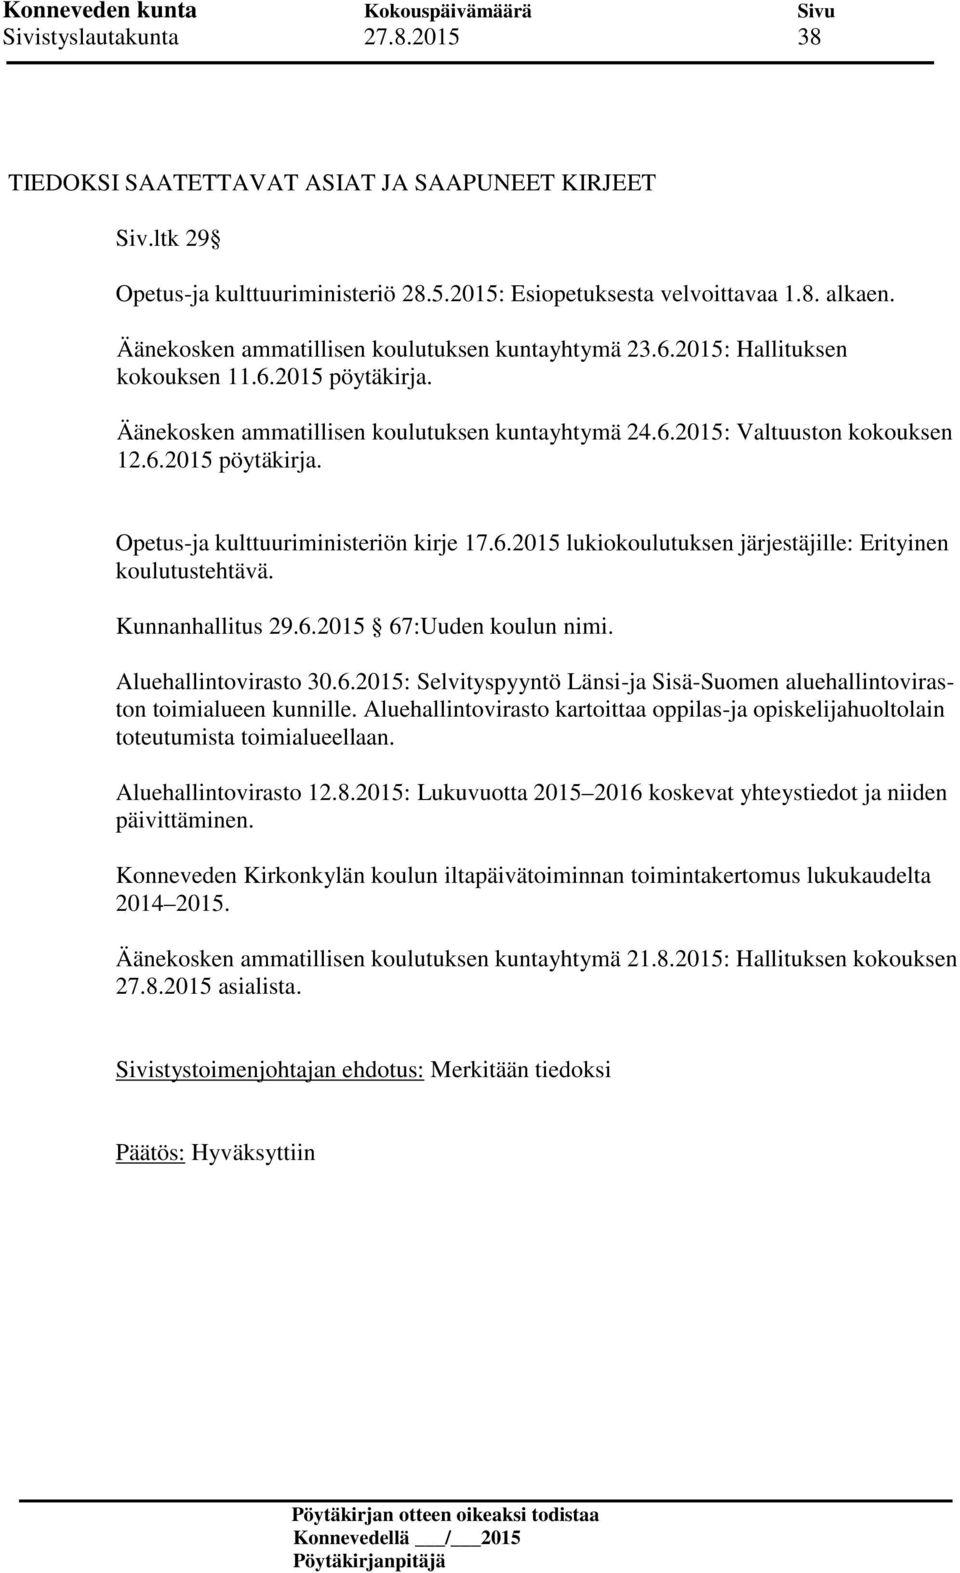 6.2015 lukiokoulutuksen järjestäjille: Erityinen koulutustehtävä. Kunnanhallitus 29.6.2015 67:Uuden koulun nimi. Aluehallintovirasto 30.6.2015: Selvityspyyntö Länsi-ja Sisä-Suomen aluehallintoviraston toimialueen kunnille.